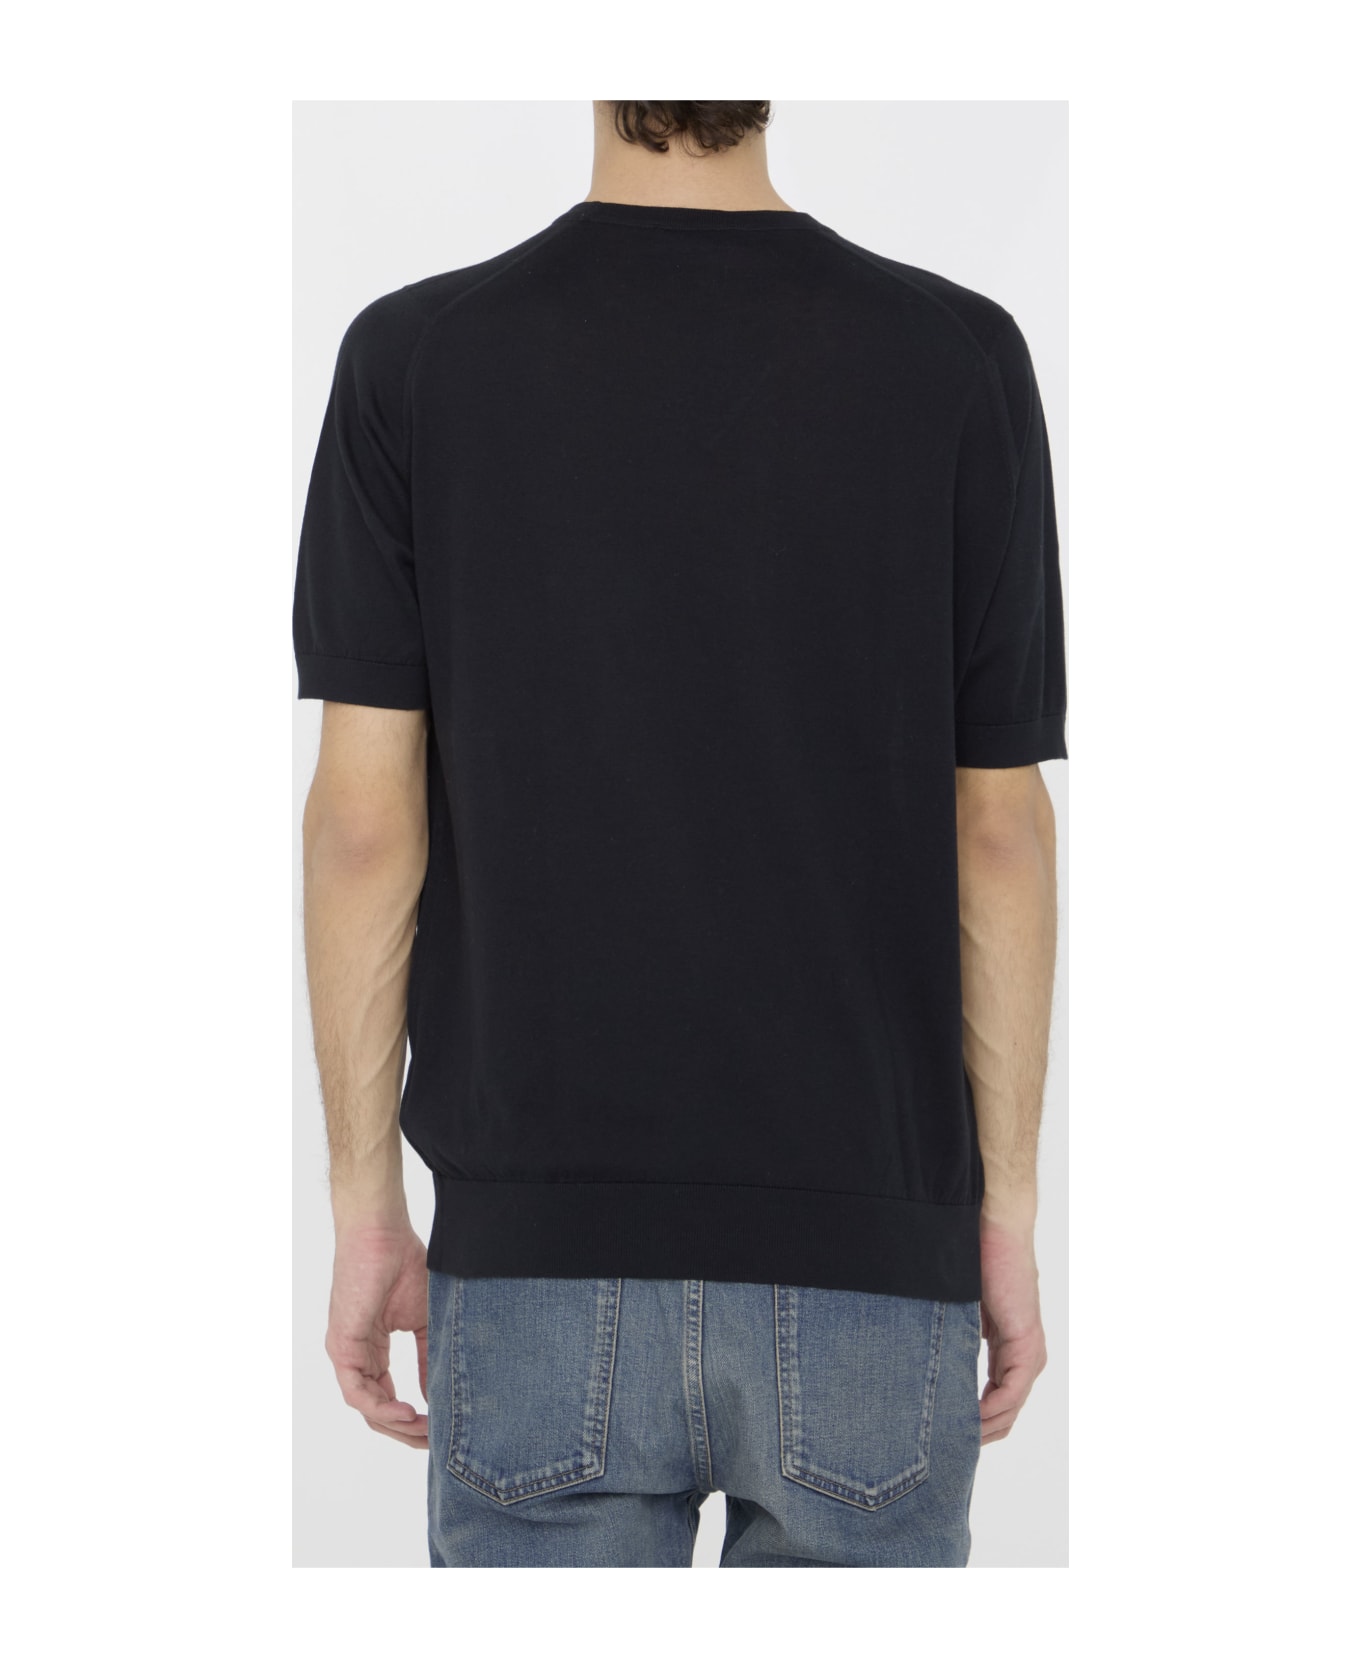 John Smedley Kempton T-shirt - BLACK